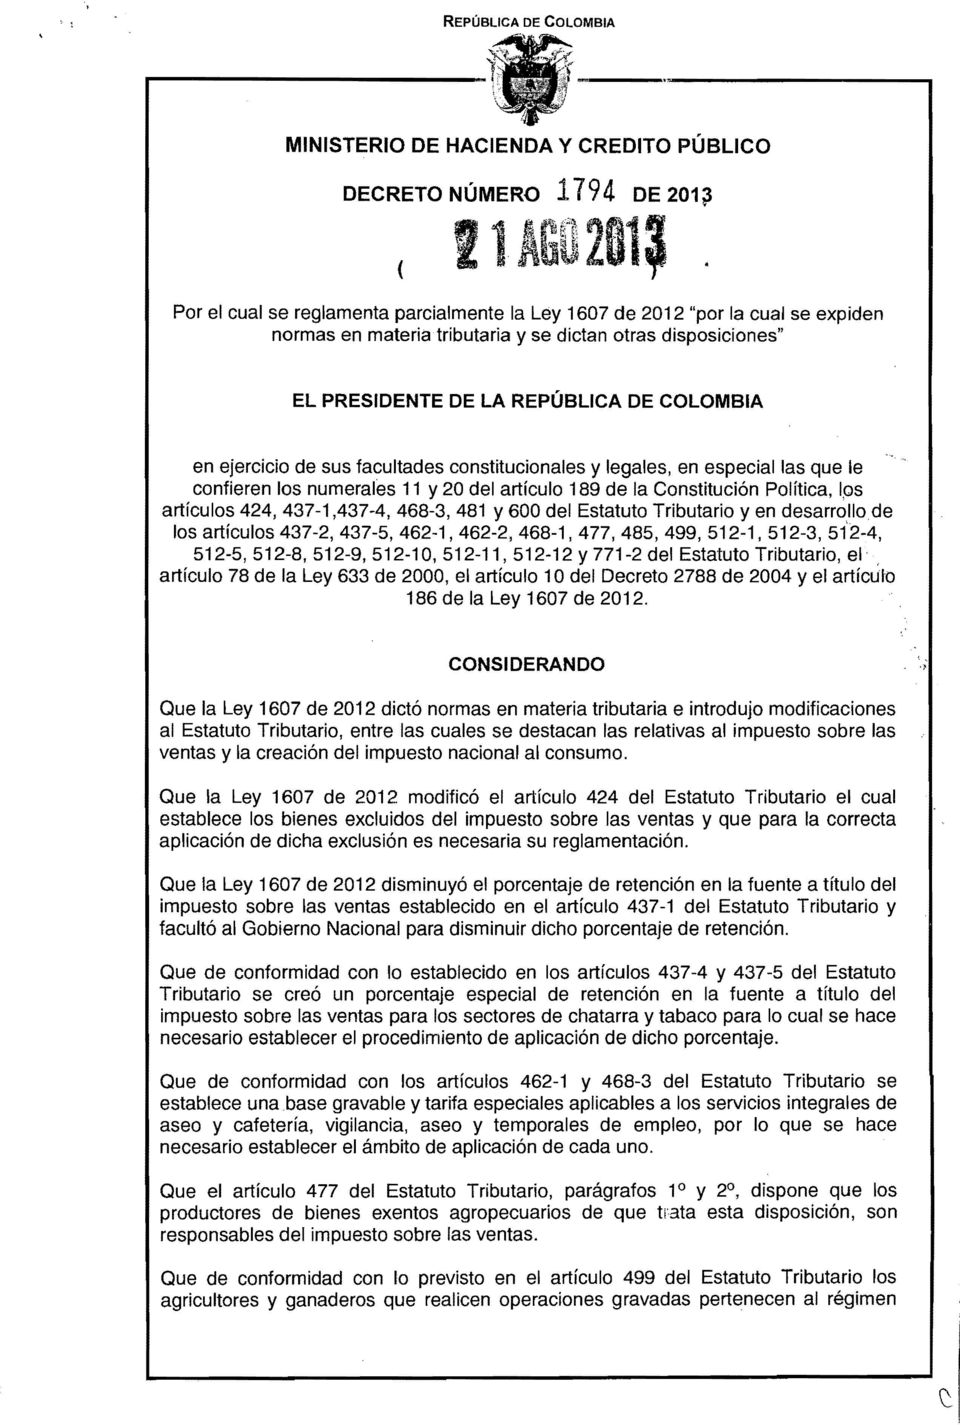 EL PRESIDENTE DE LA REPÚBLICA DE COLOMBIA en ejercicio de sus facultades constitucionales y legales, en especial las que le confieren los numerales 11 y 20 del artículo 189 de la Constitución